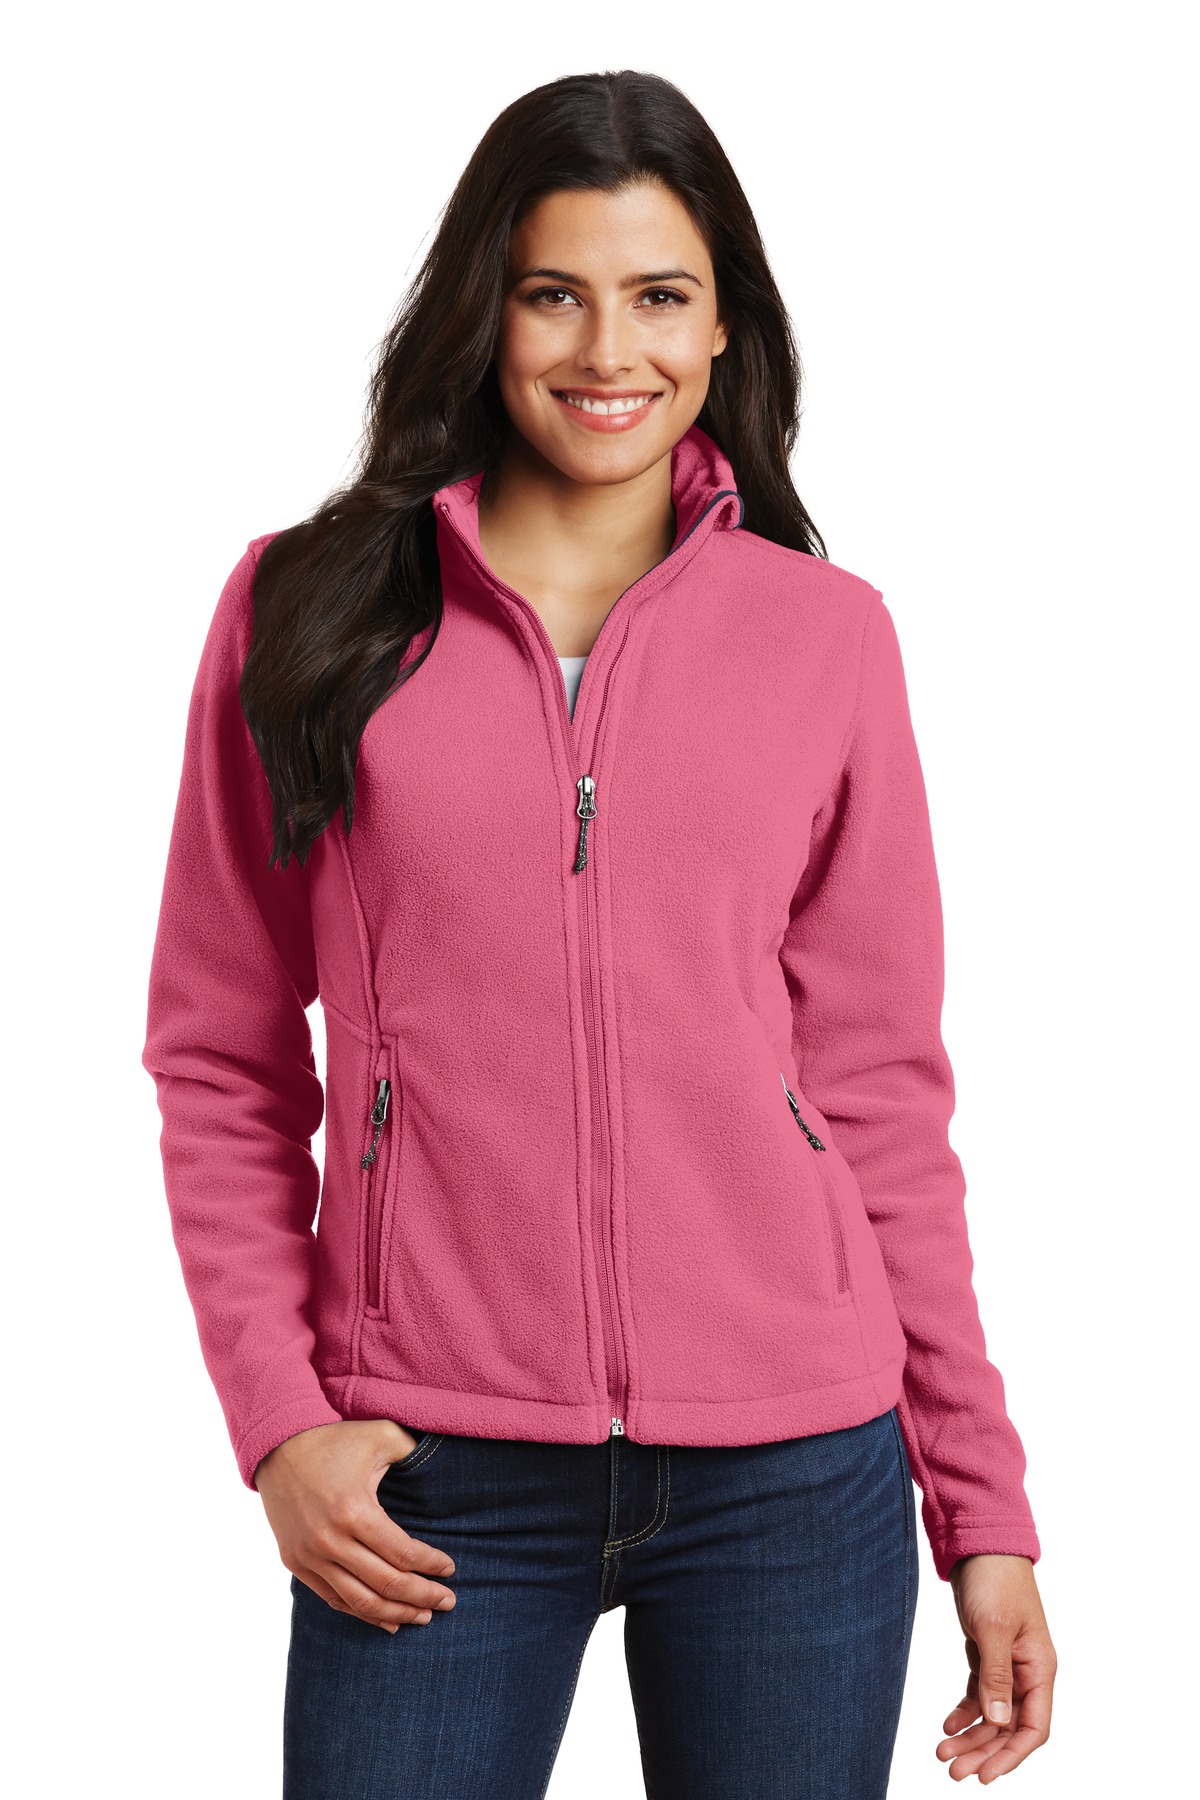 Port Authority Women's Value Fleece Jacket - image 1 of 1